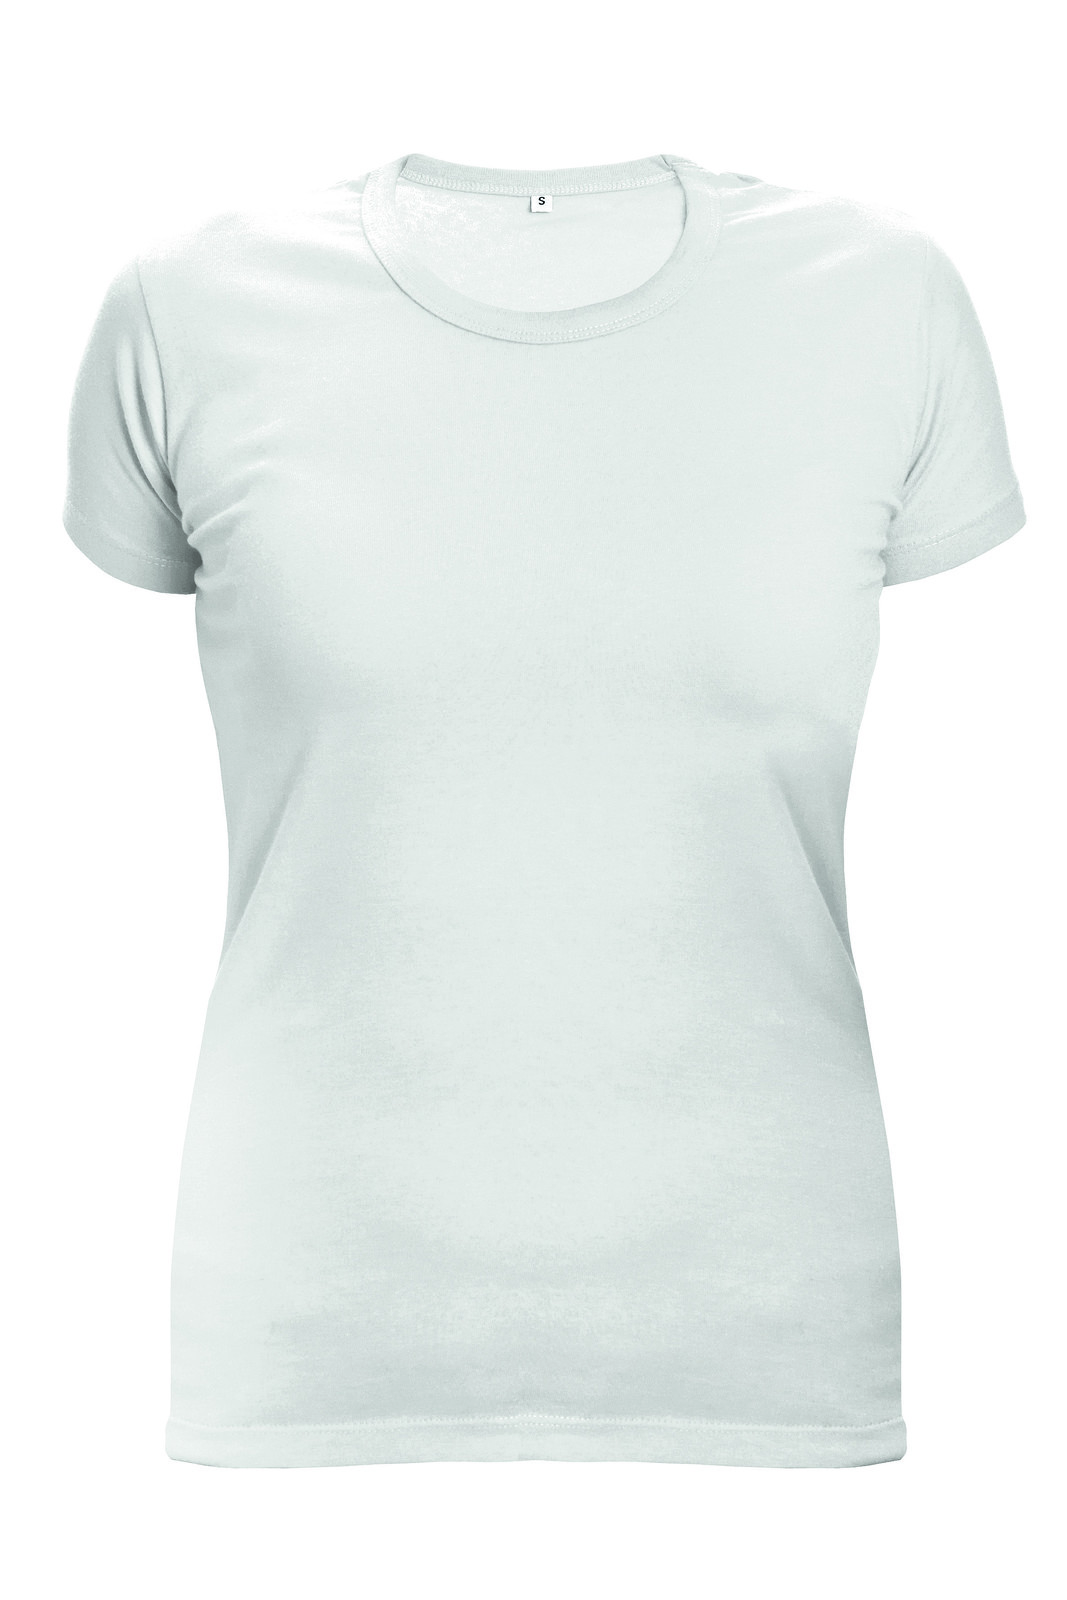 Dámske tričko s krátkym rukávom Surma Lady - veľkosť: XS, farba: biela